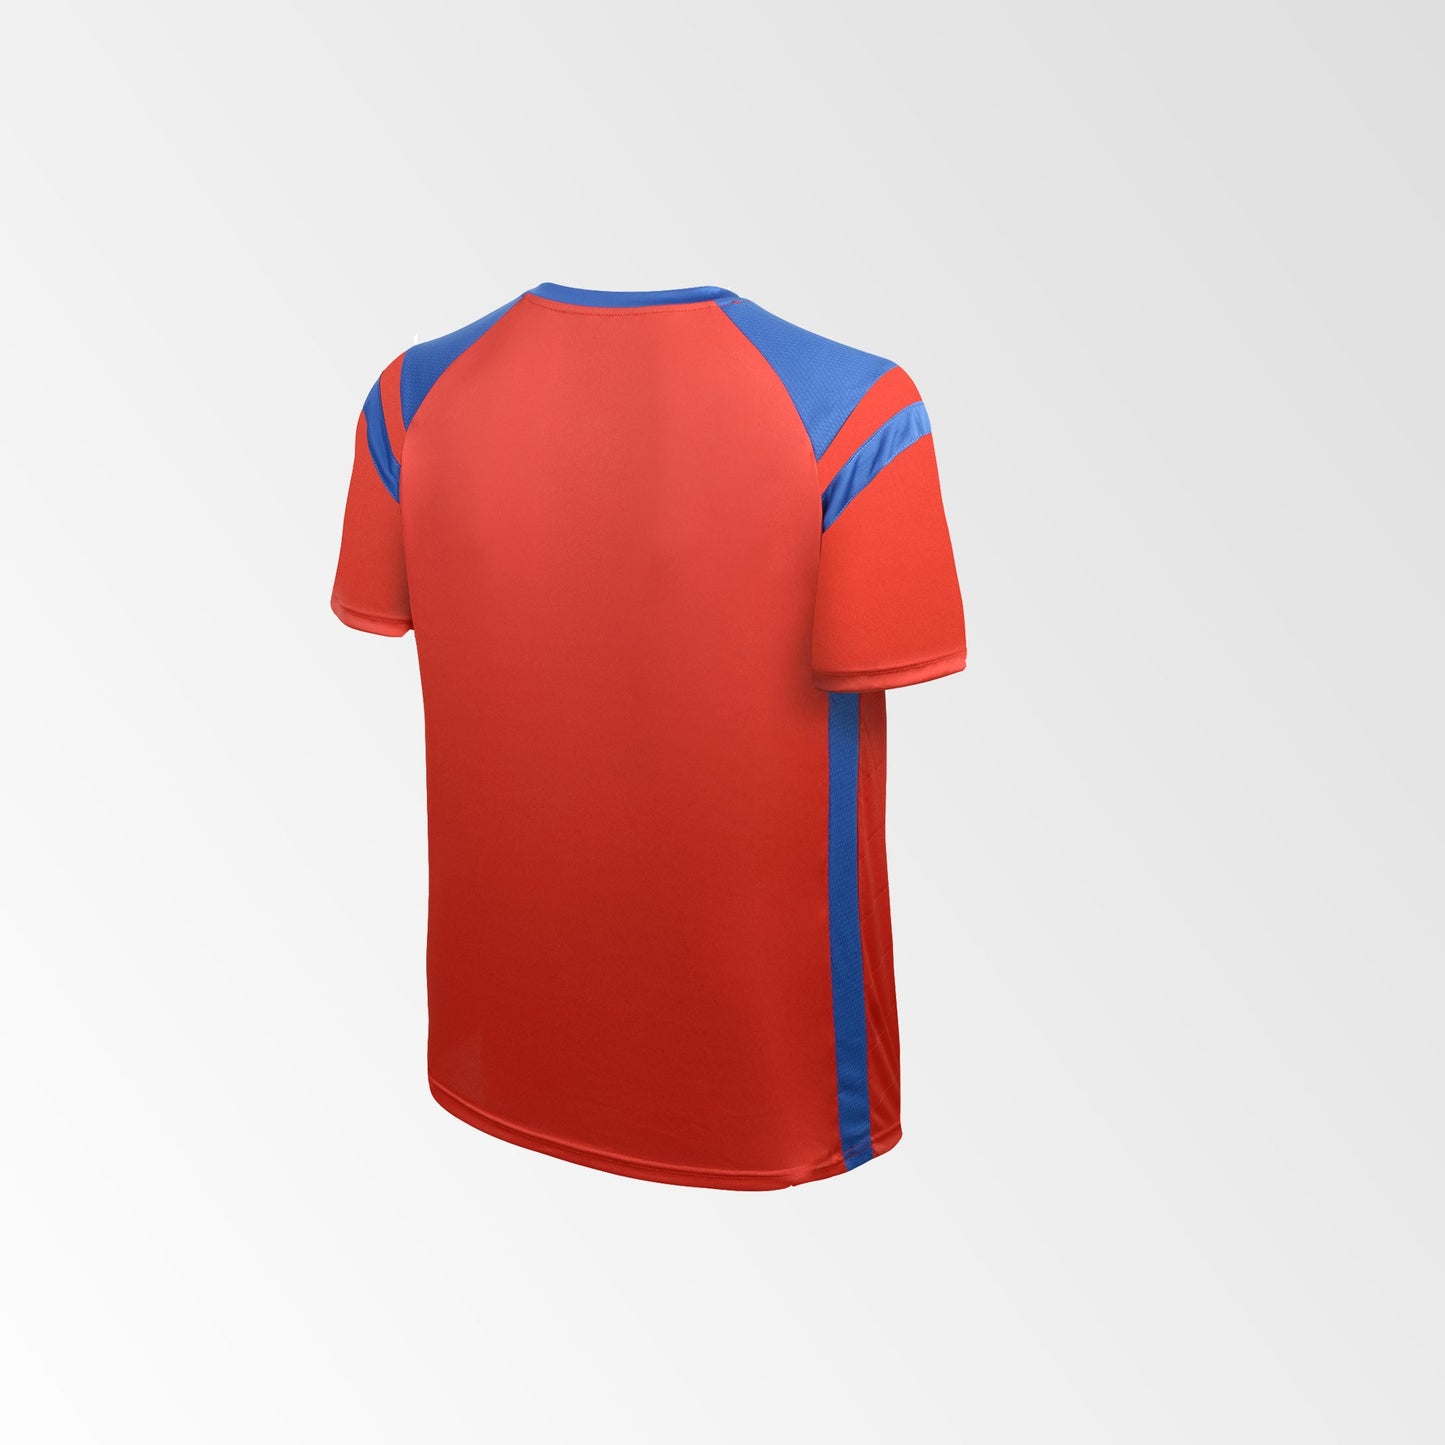 Camiseta de Futbol y Short Modelo High Five Rojo Azul (Niños - Juveniles)